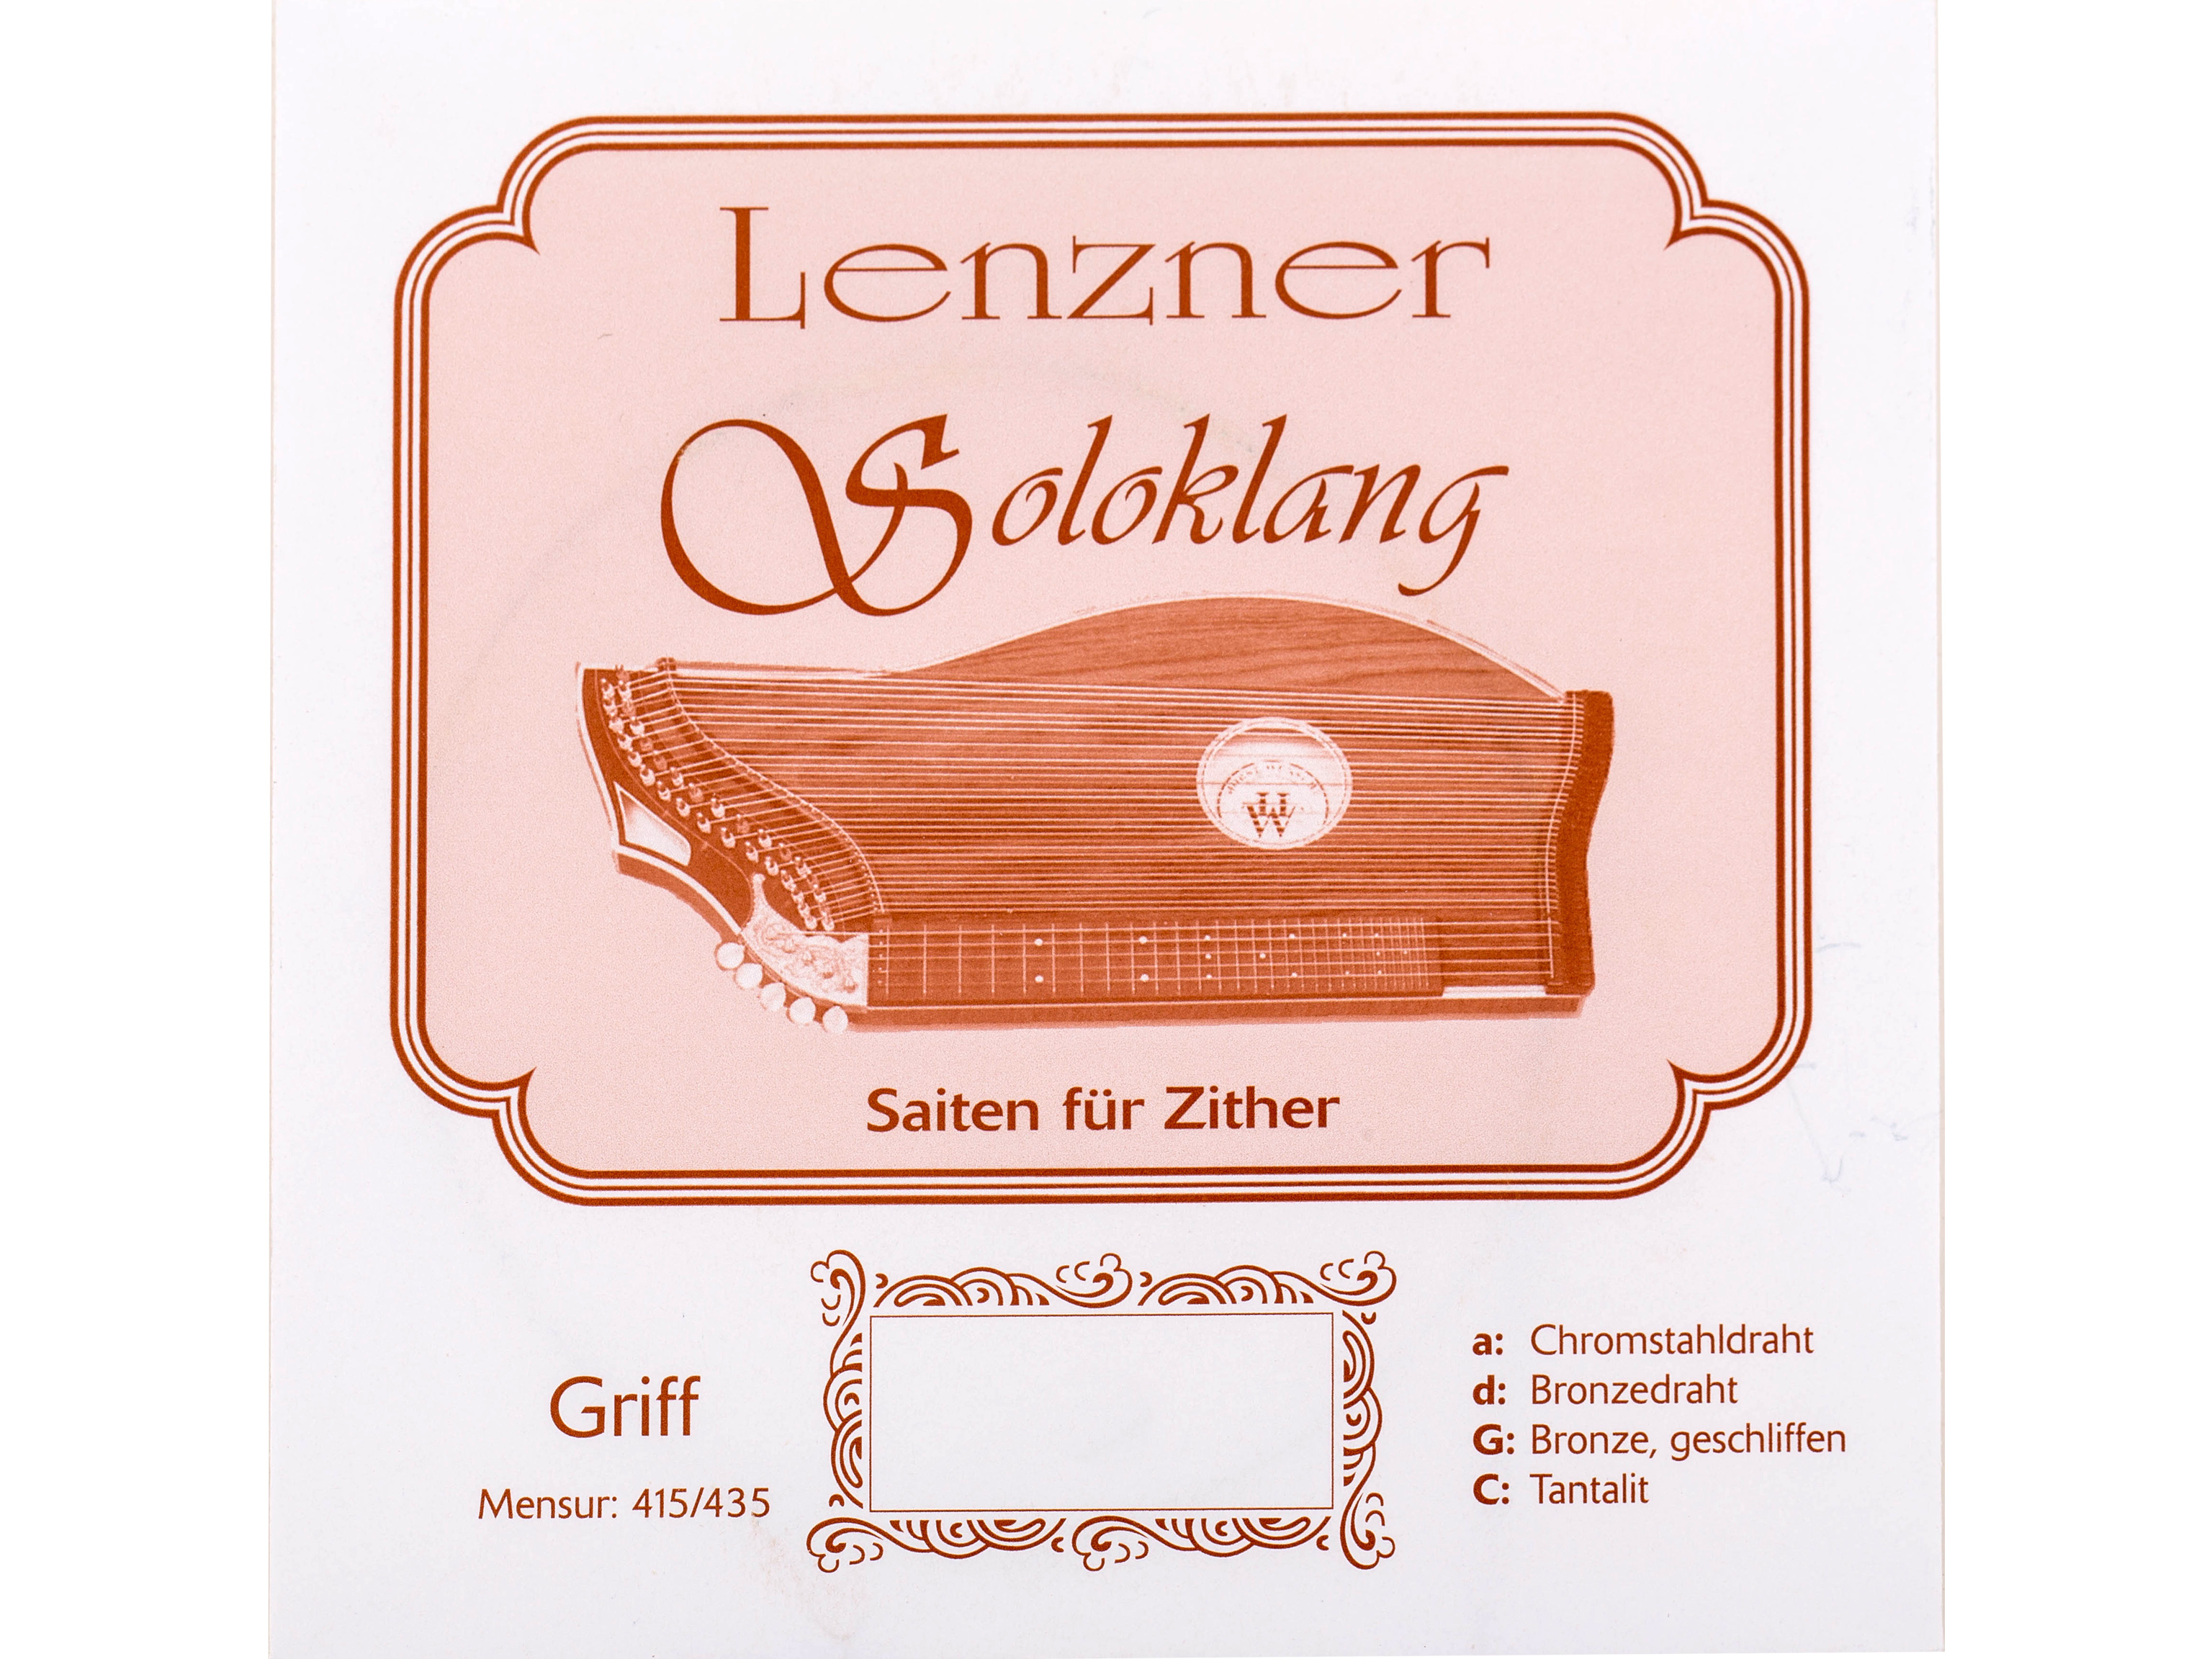 Lenzner 5510 Zithersaitensatz Griffbrett